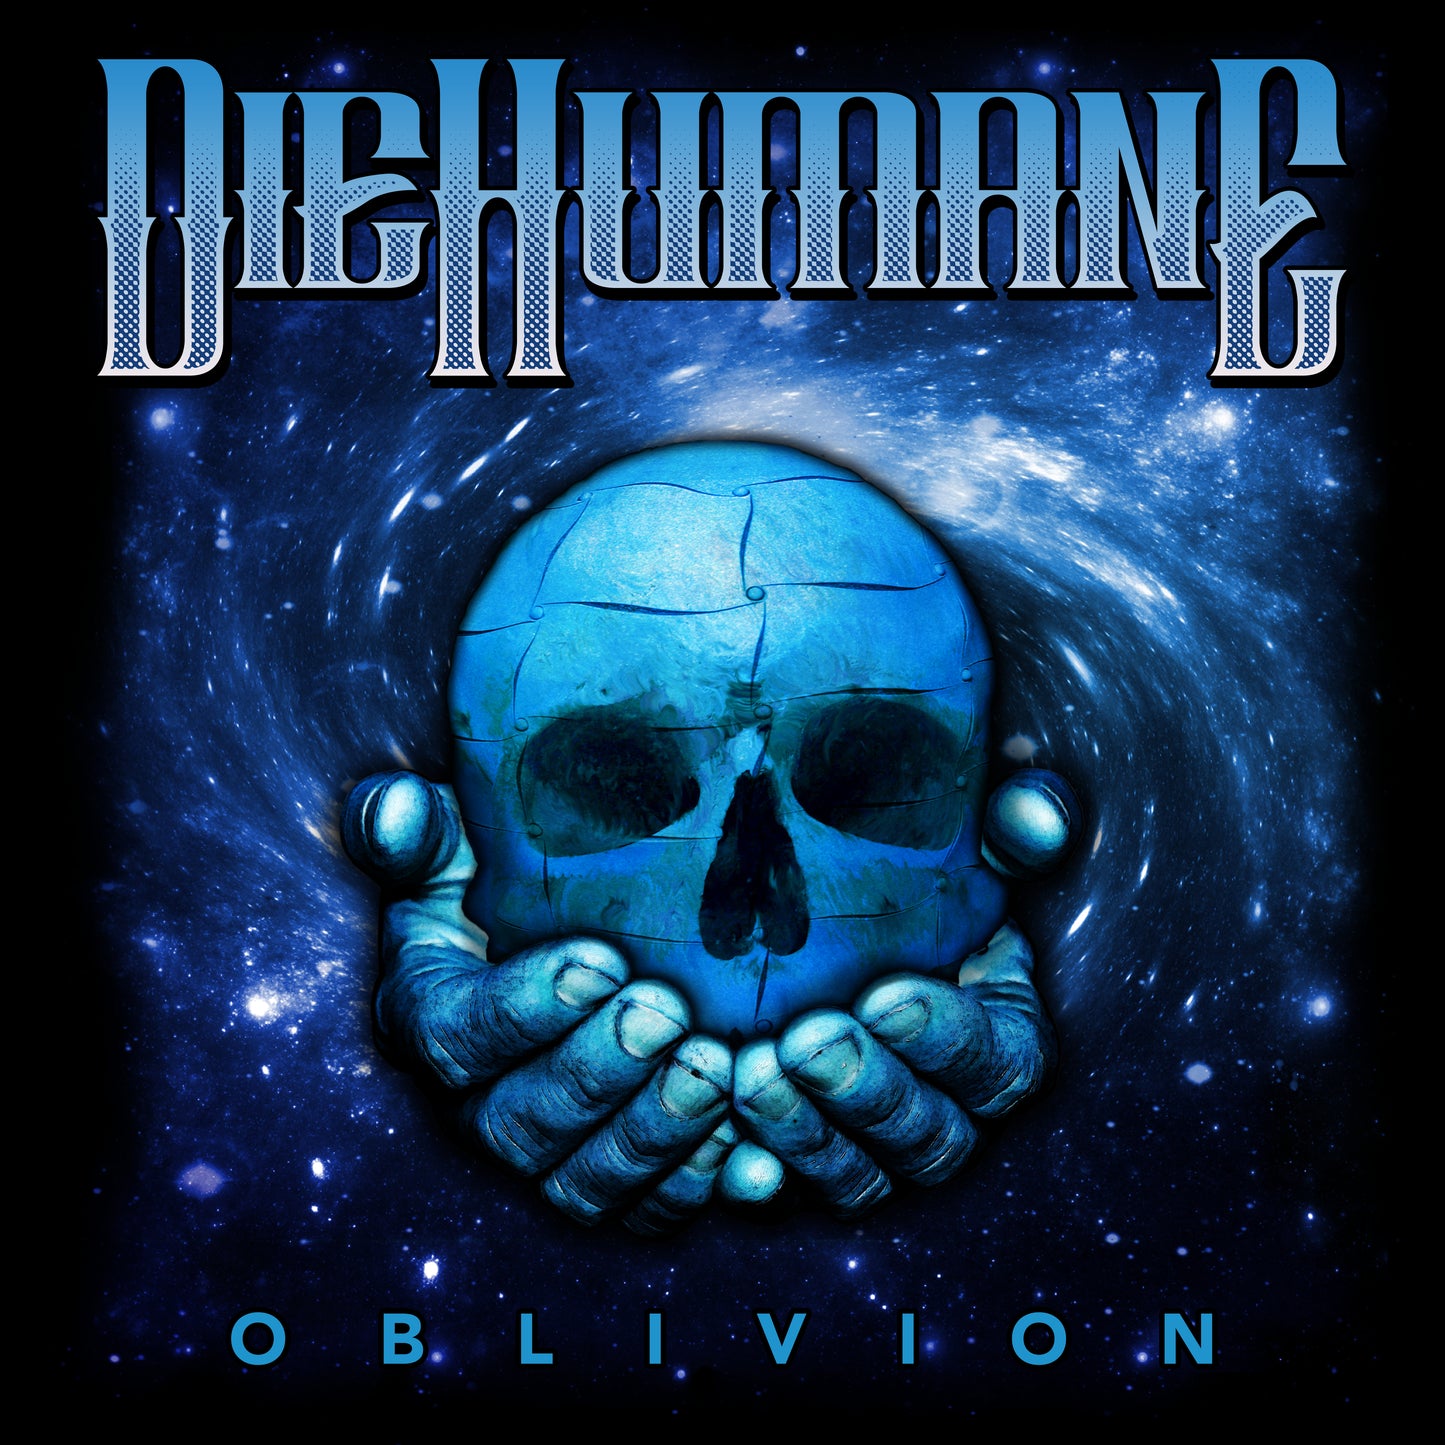 DieHumane - Oblivion - Men's T-Shirt